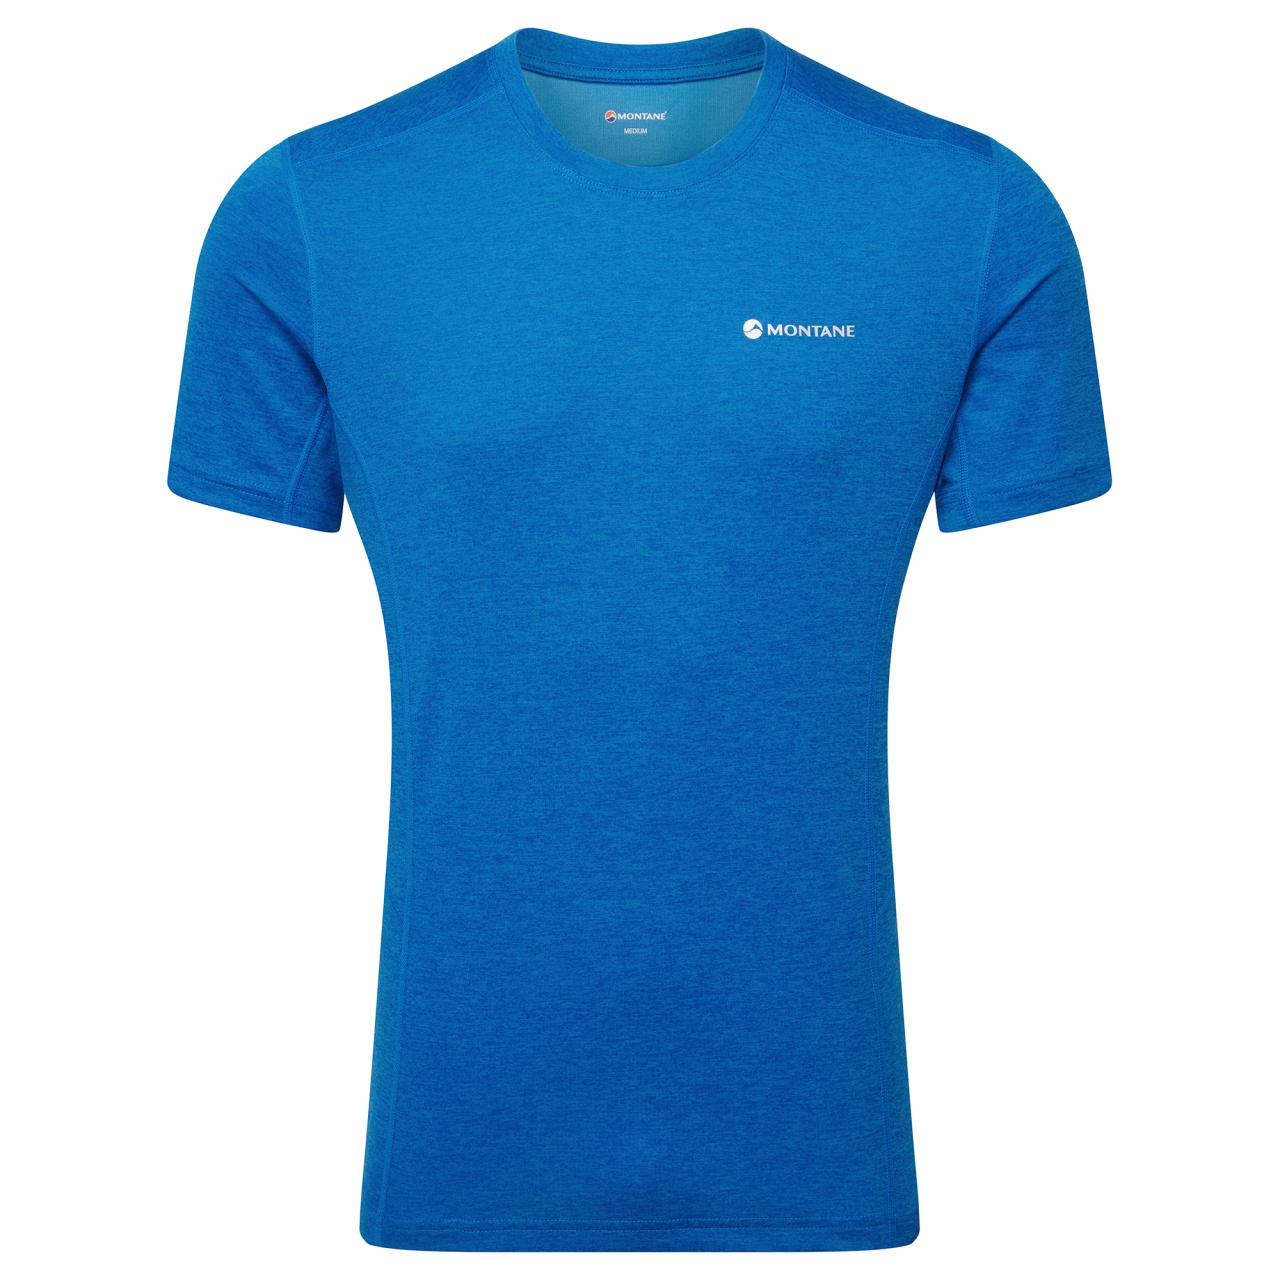 Montane pánské triko Dart T-Shirt Barva: neptune blue, Velikost: S